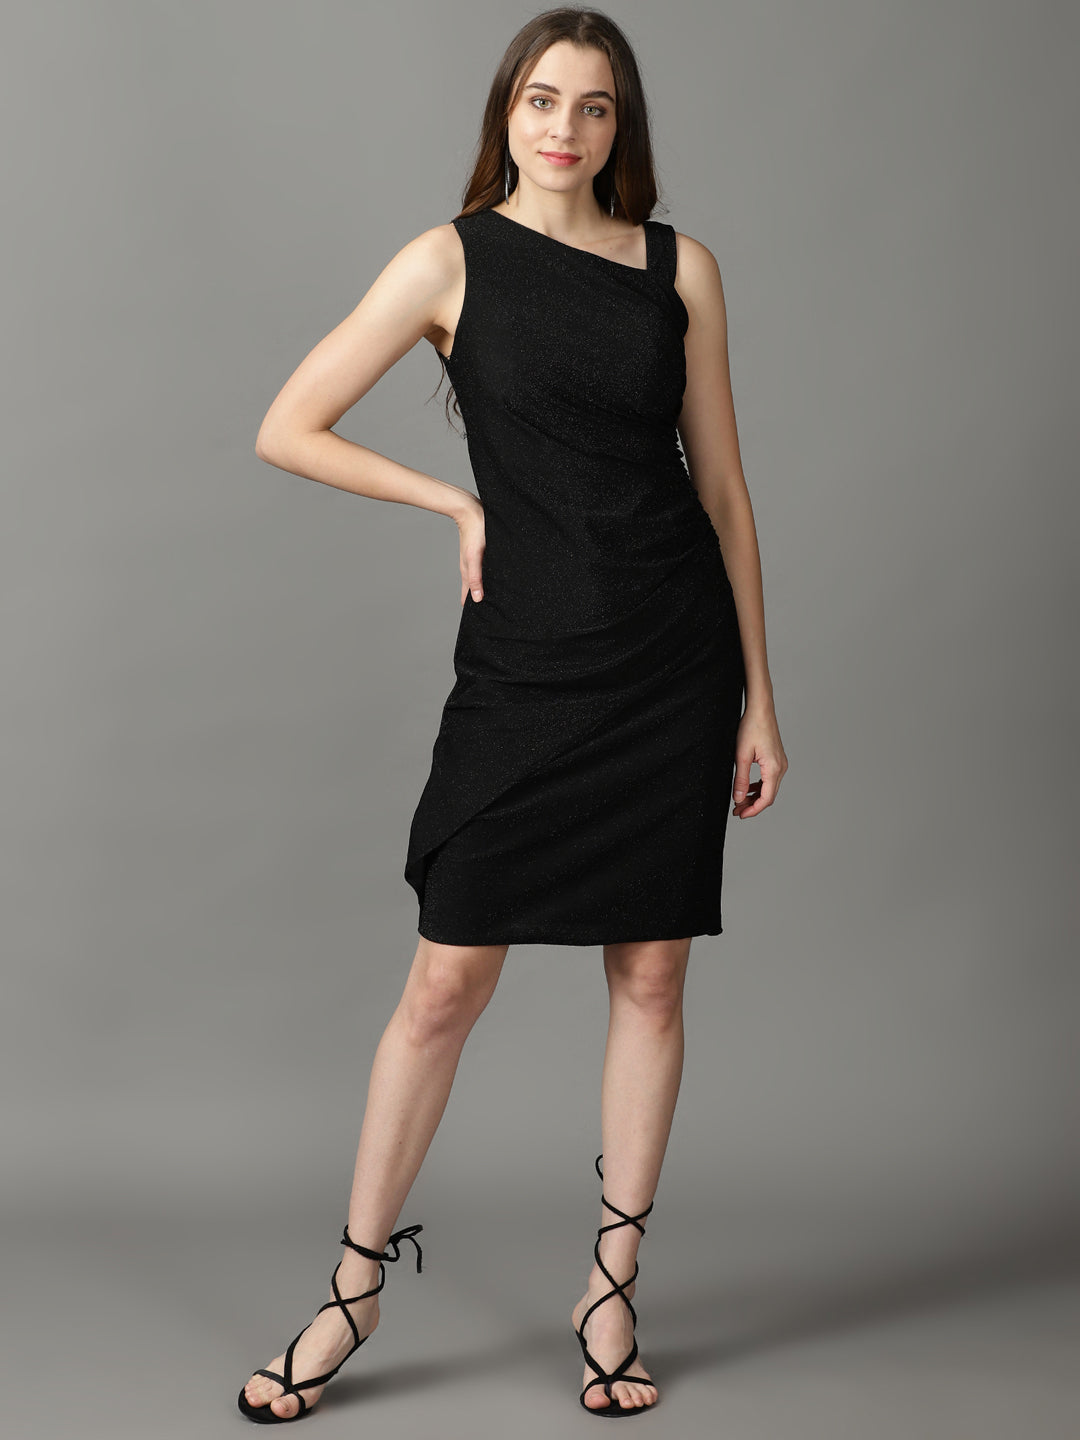 Women's Black Solid Wrap Dress